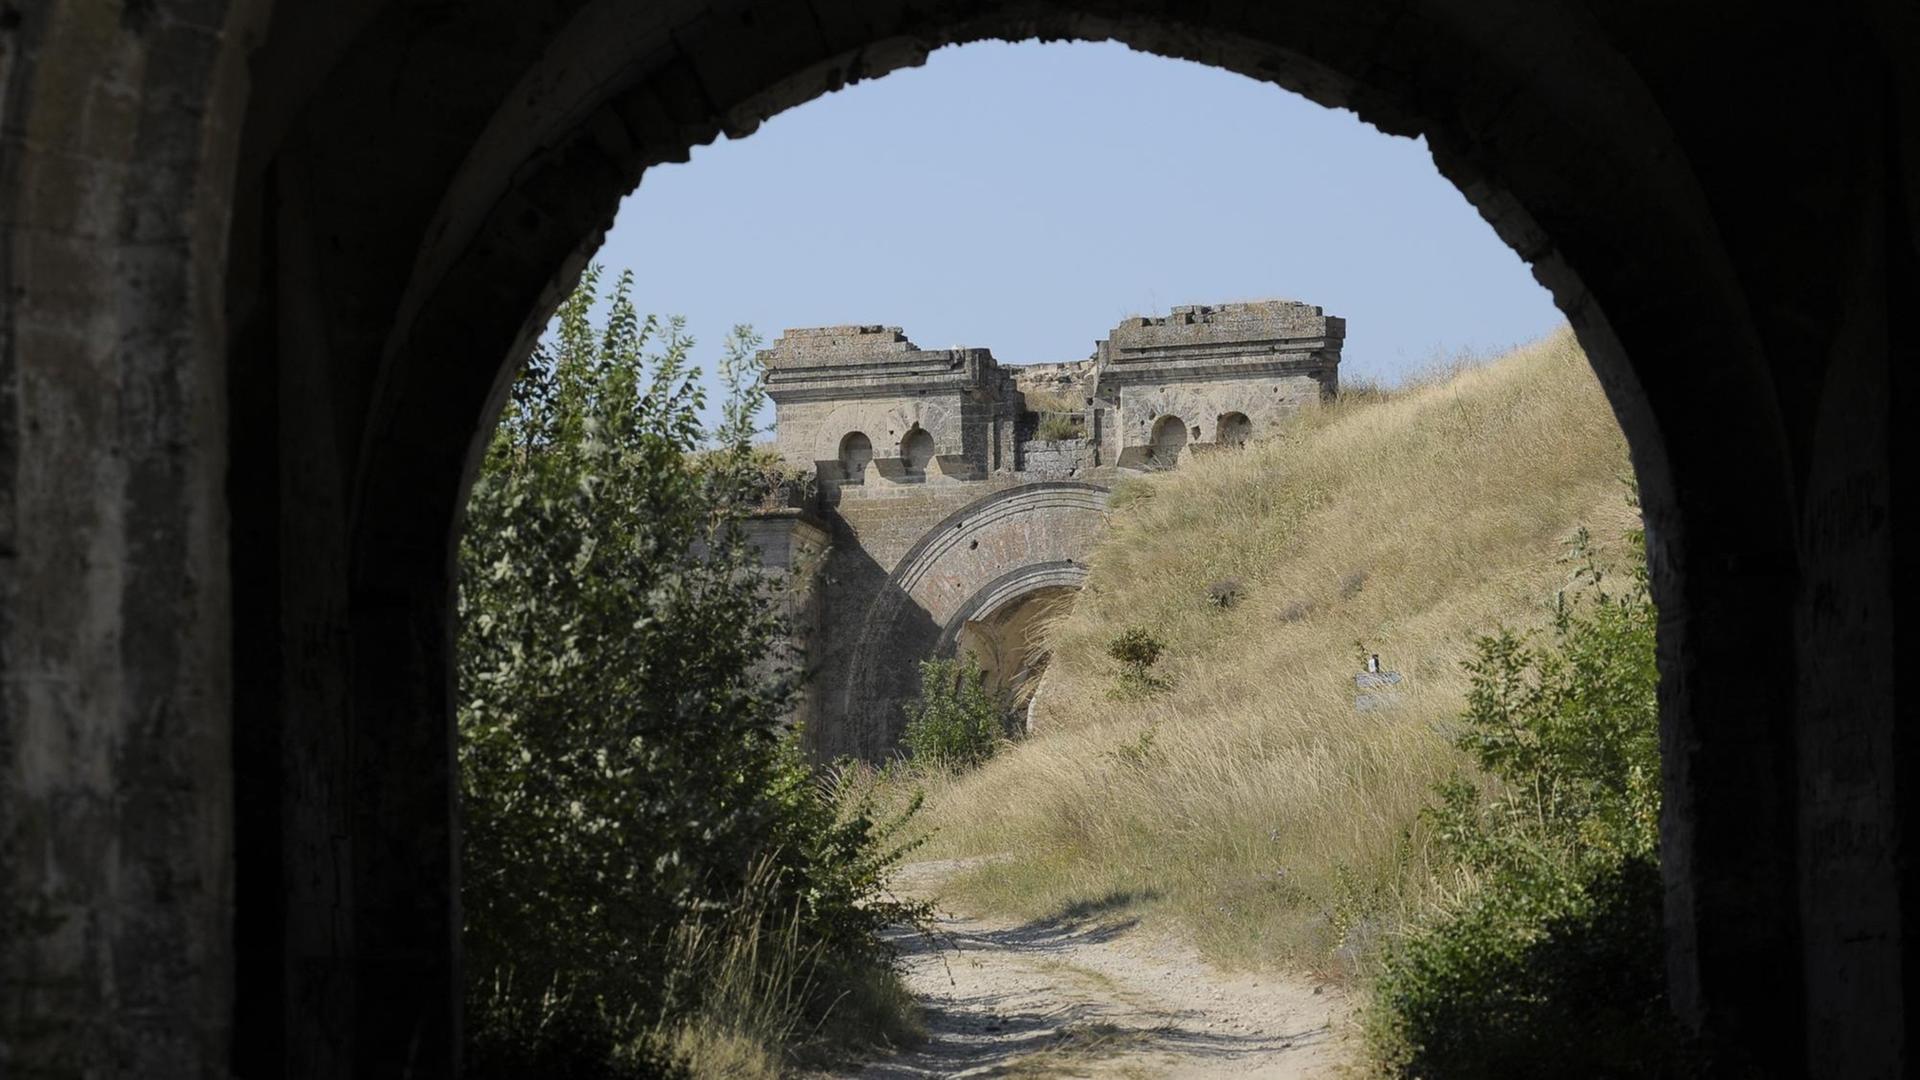 Blick durch einen Tunnel auf die Festung "Fort Totleben": Ein steinernder Torbogen, umgeben von Wiese und Gebüschen. 